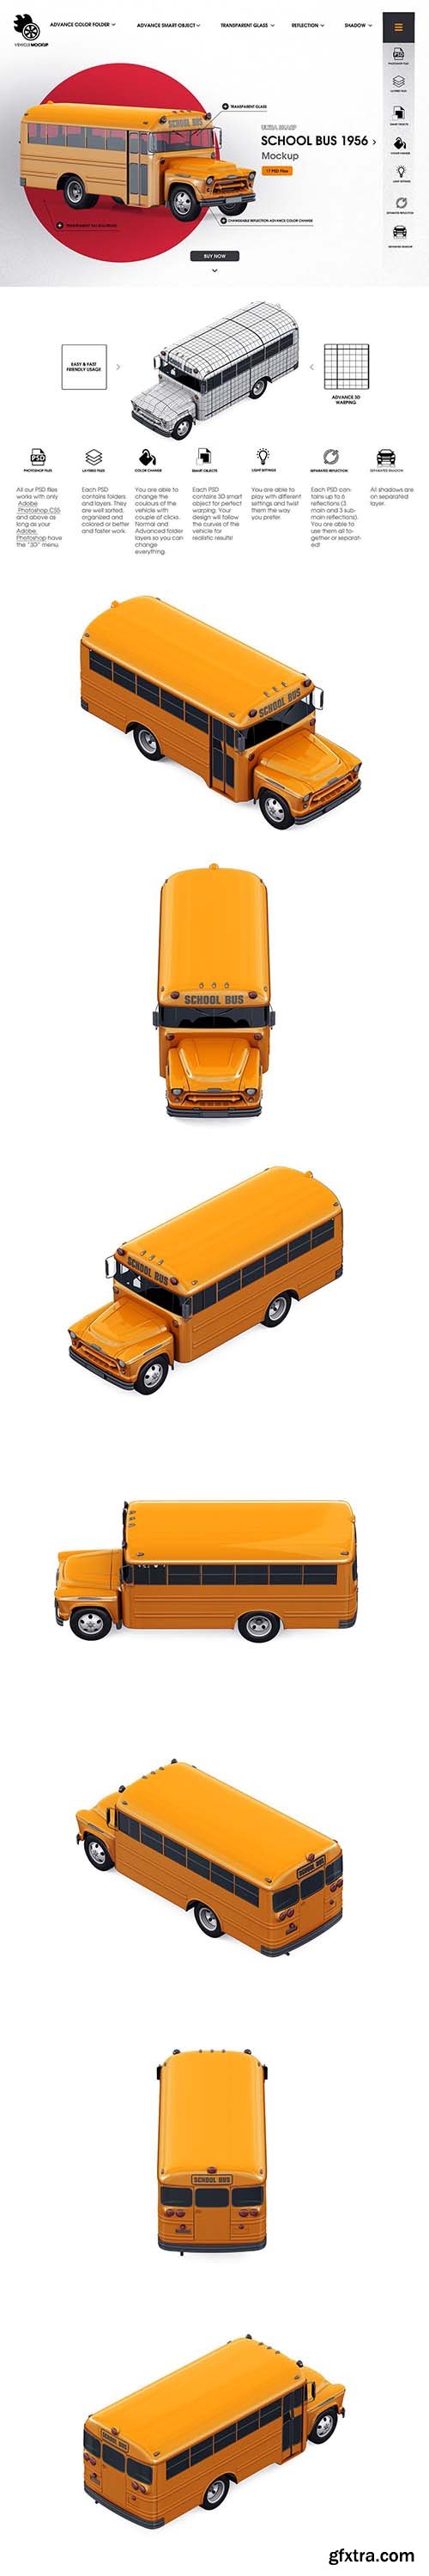 CreativeMarket - School Bus 1956 mockup 5960356